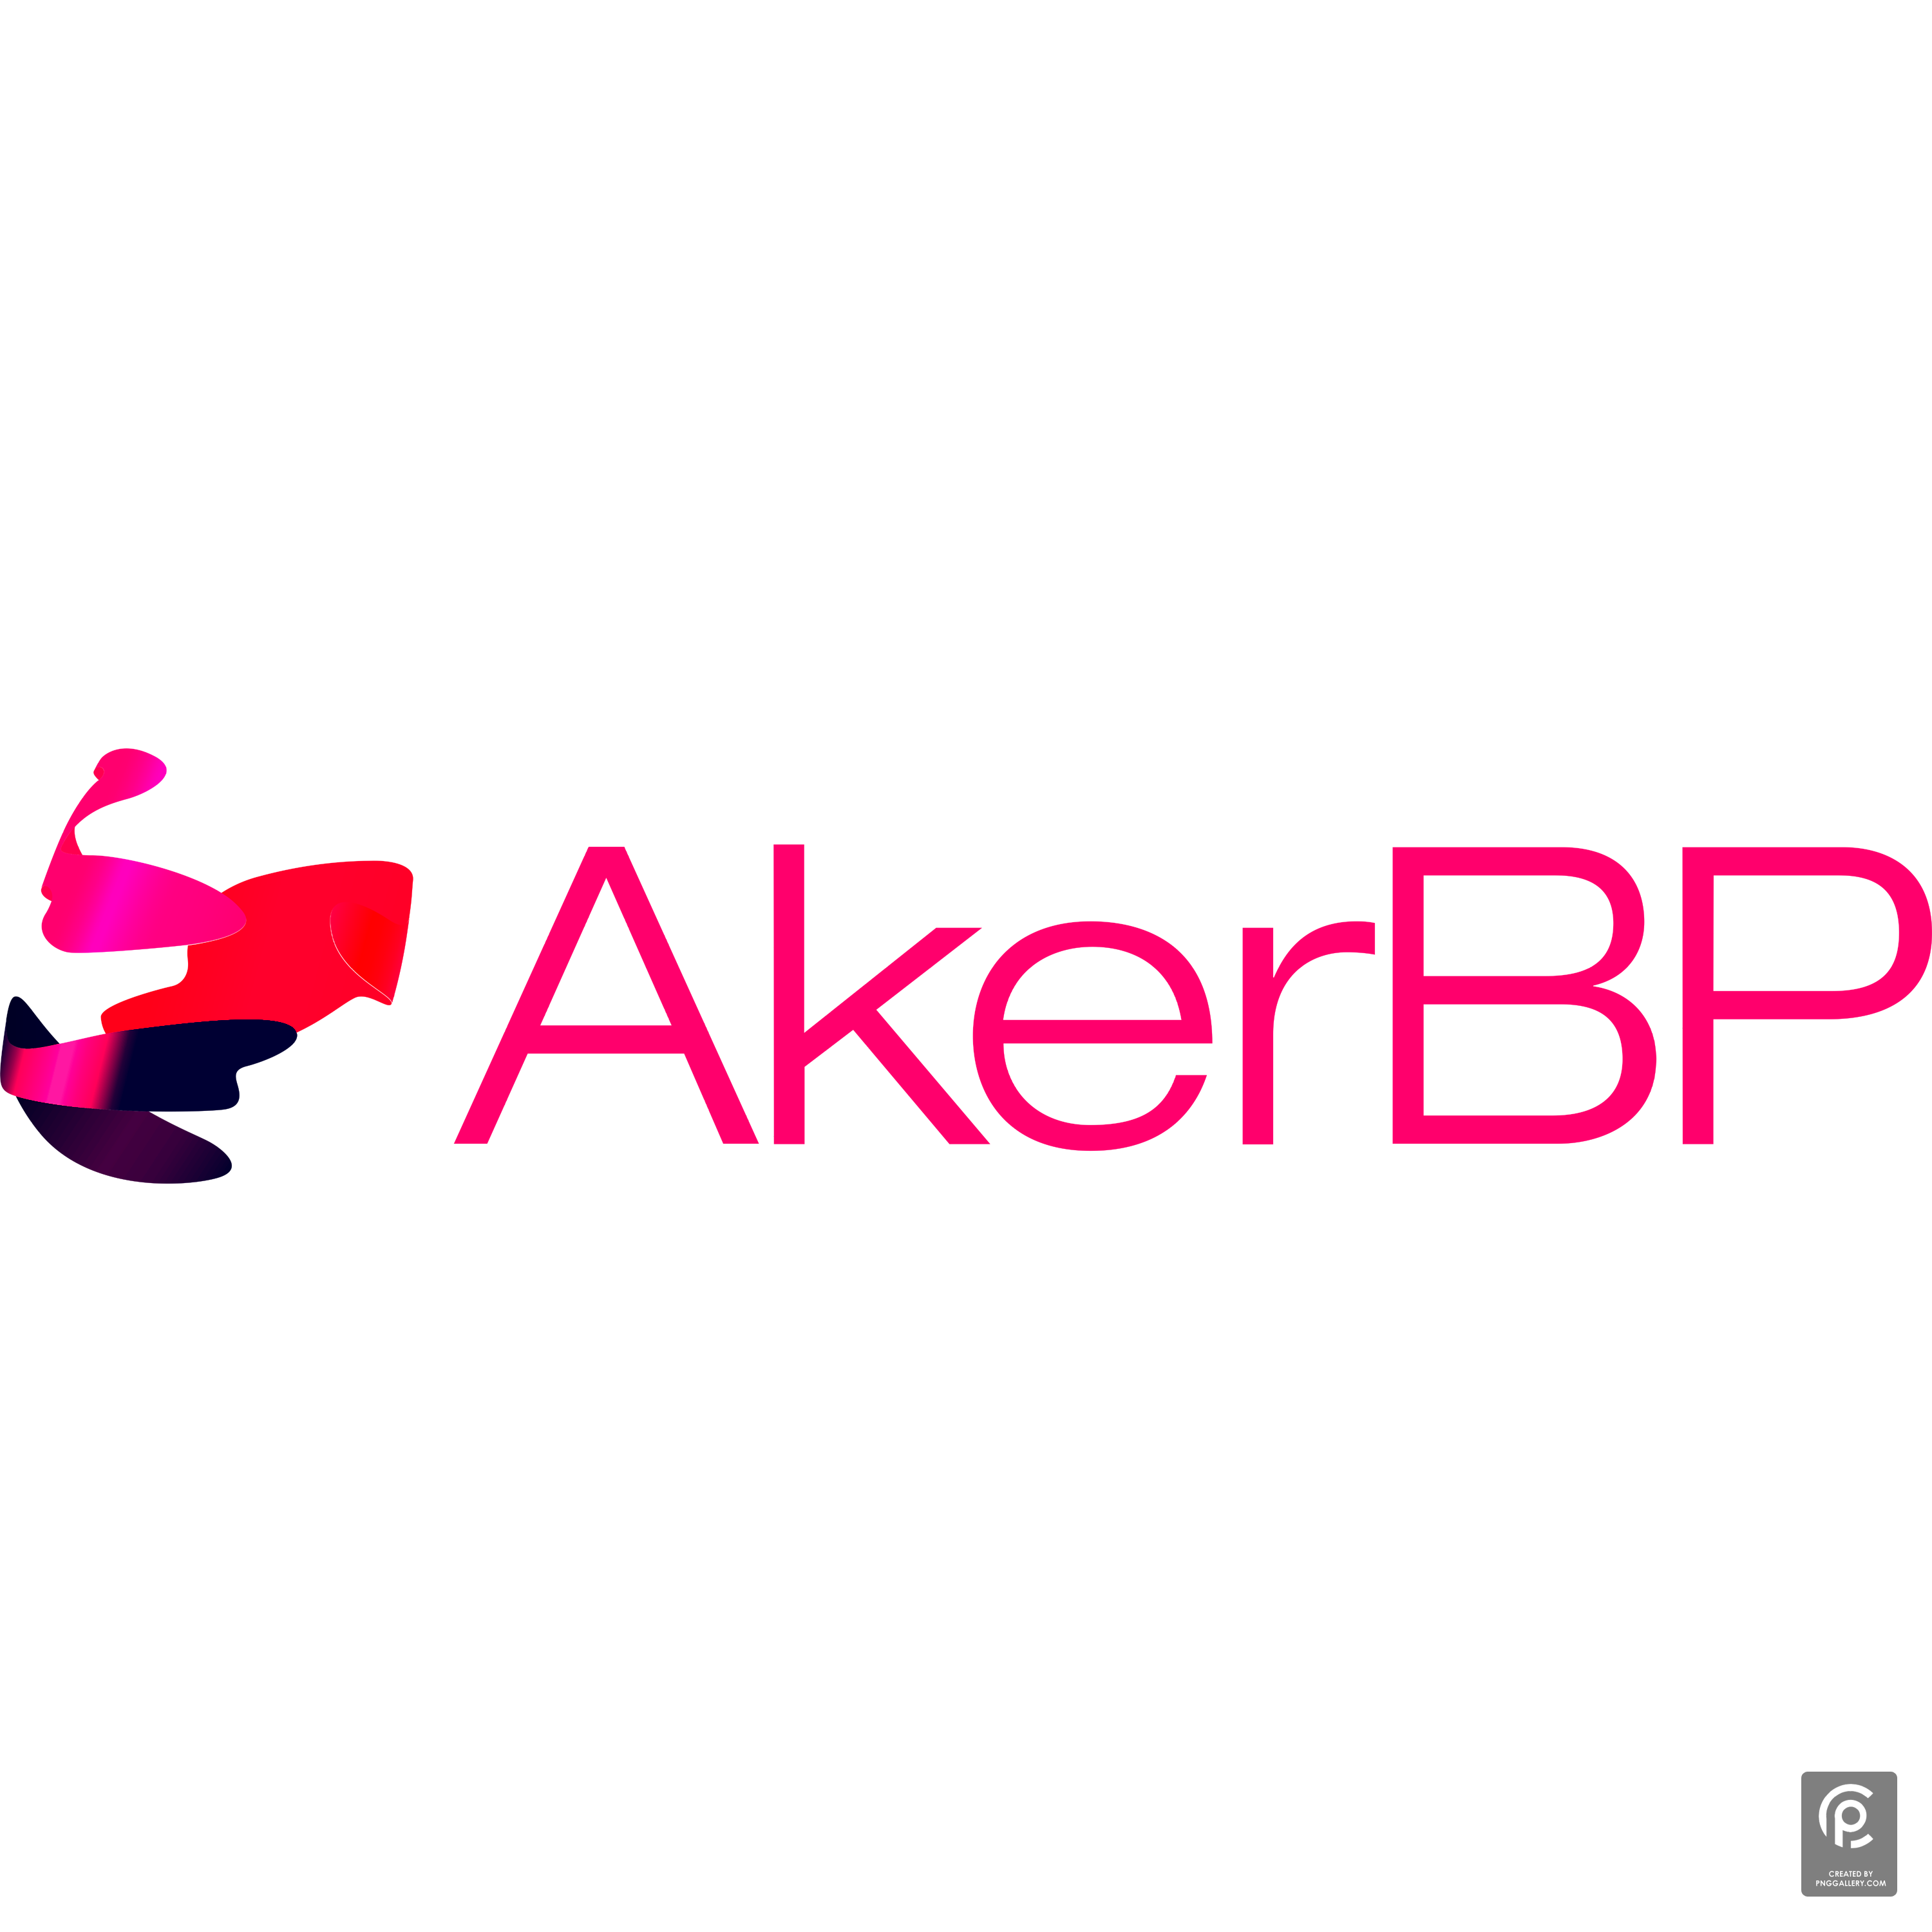 Akerbp Logo Transparent Picture